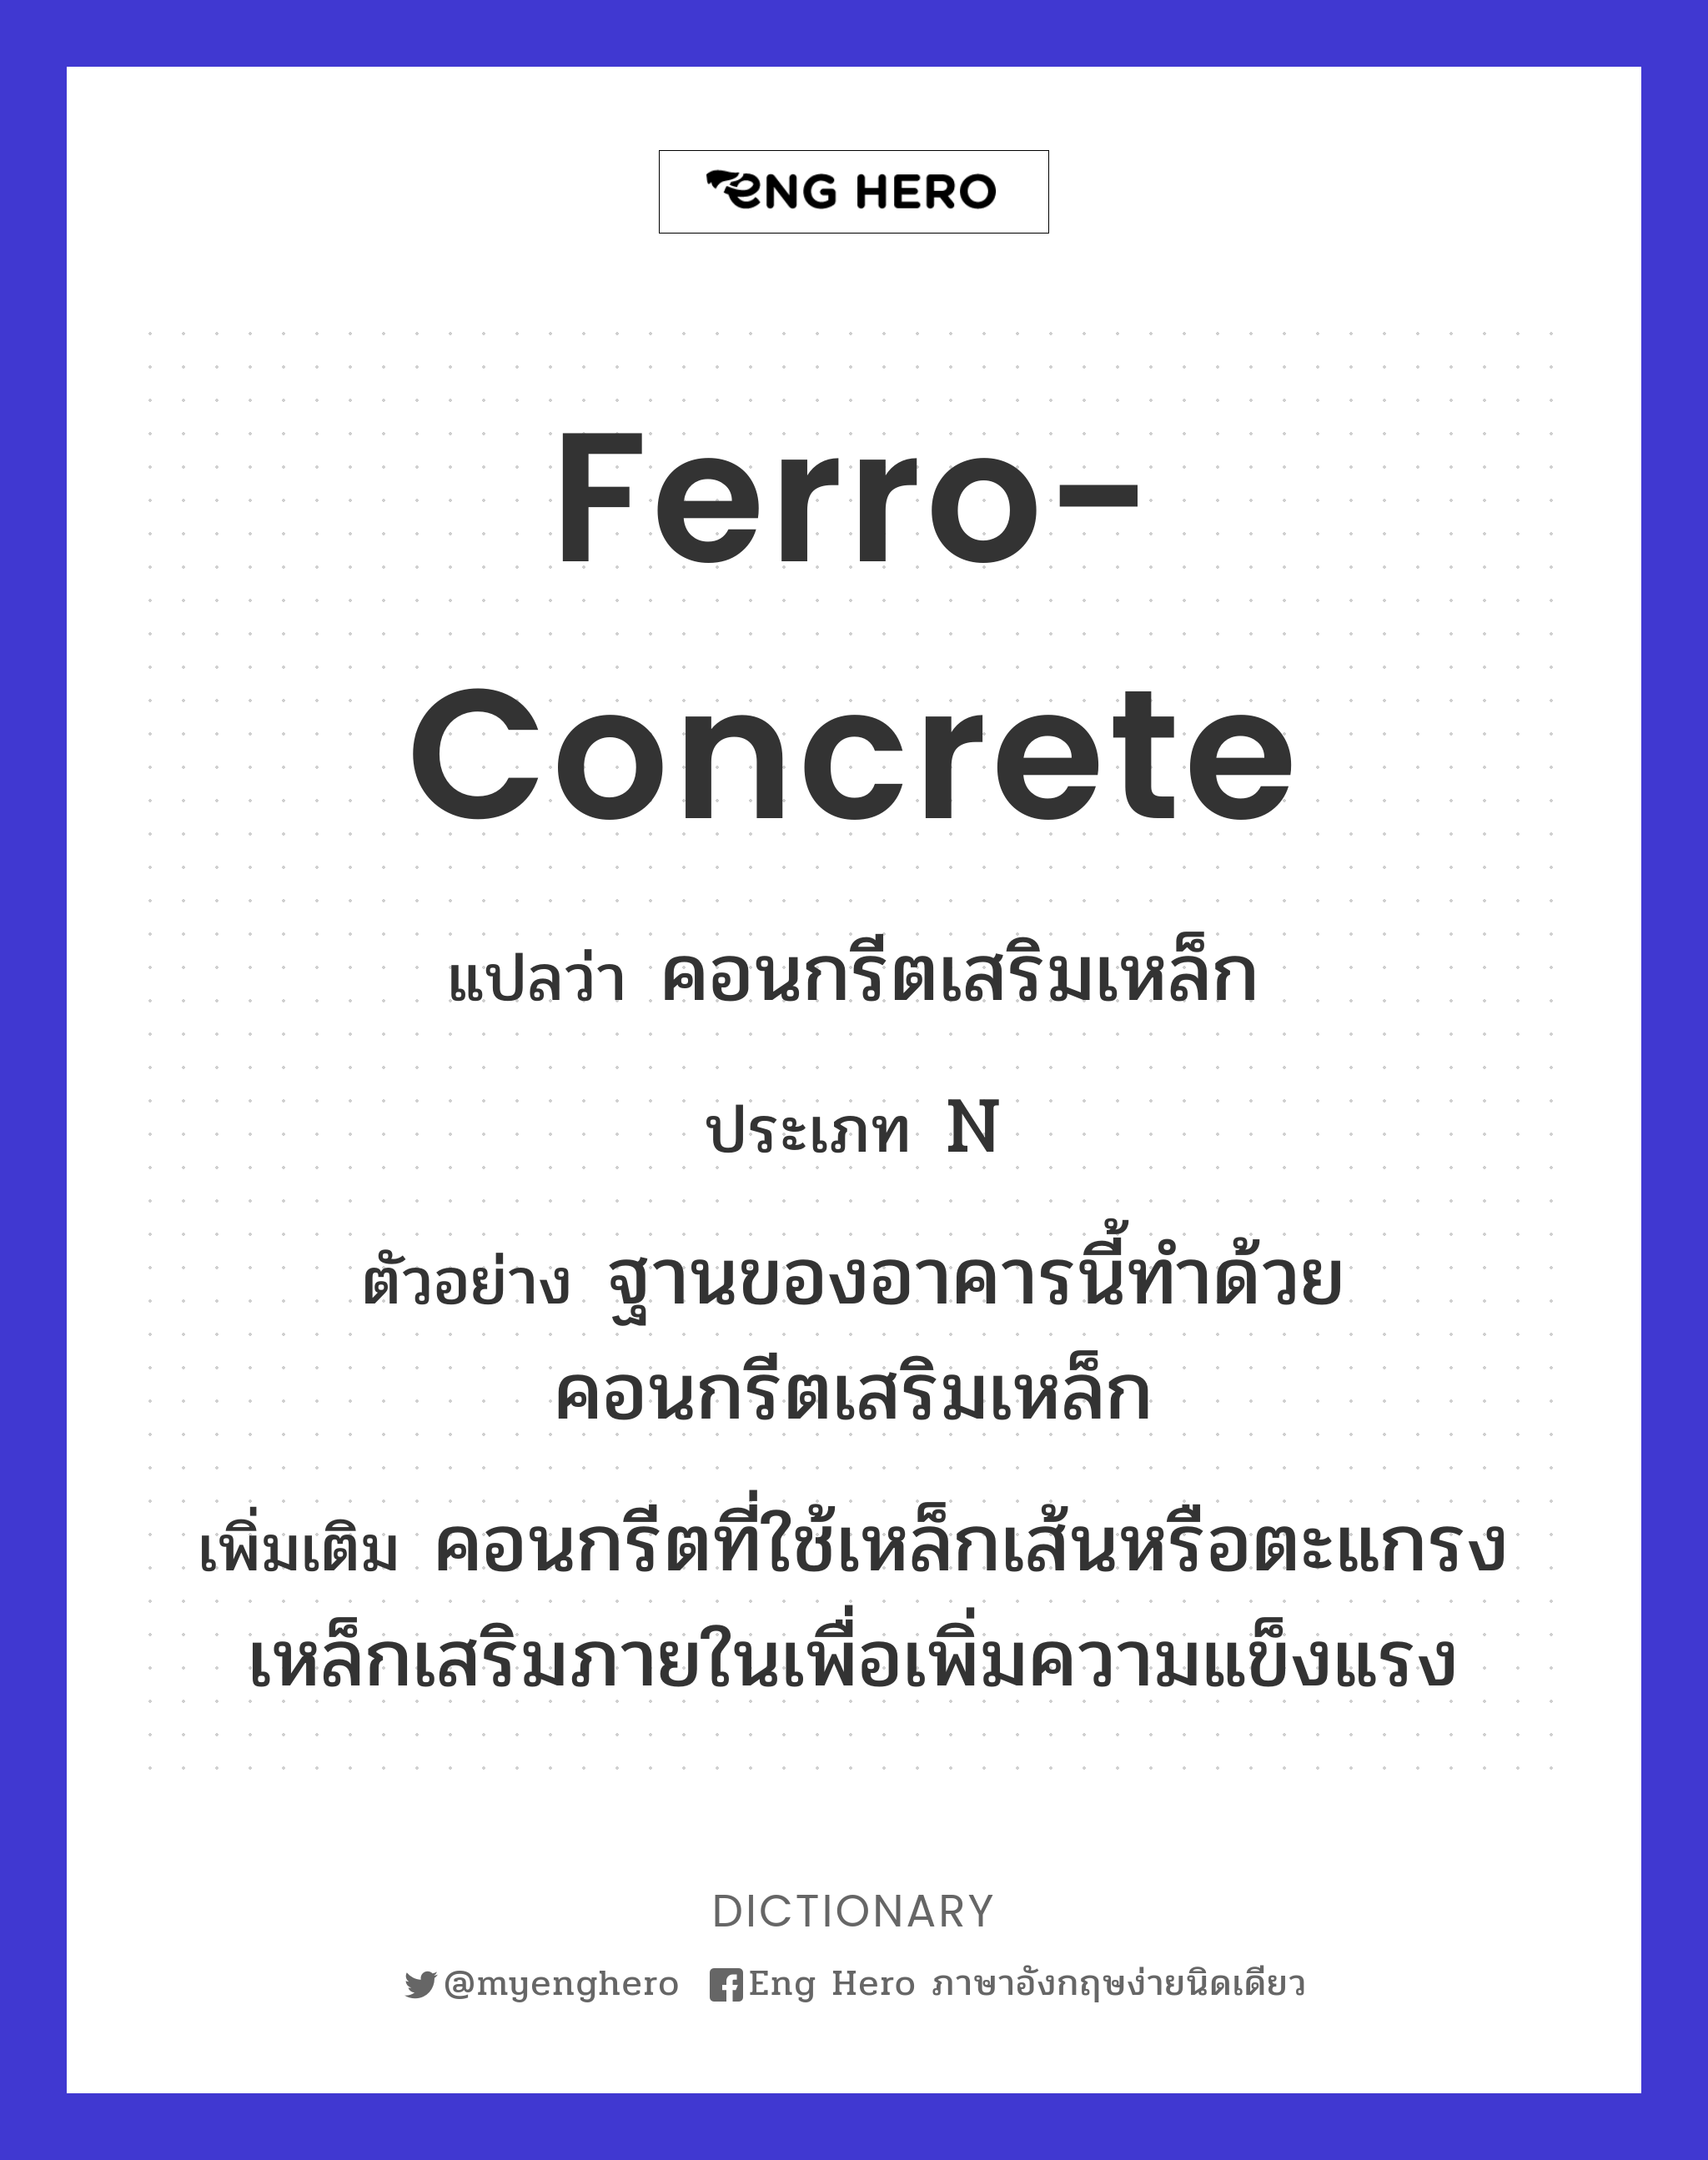 ferro-concrete